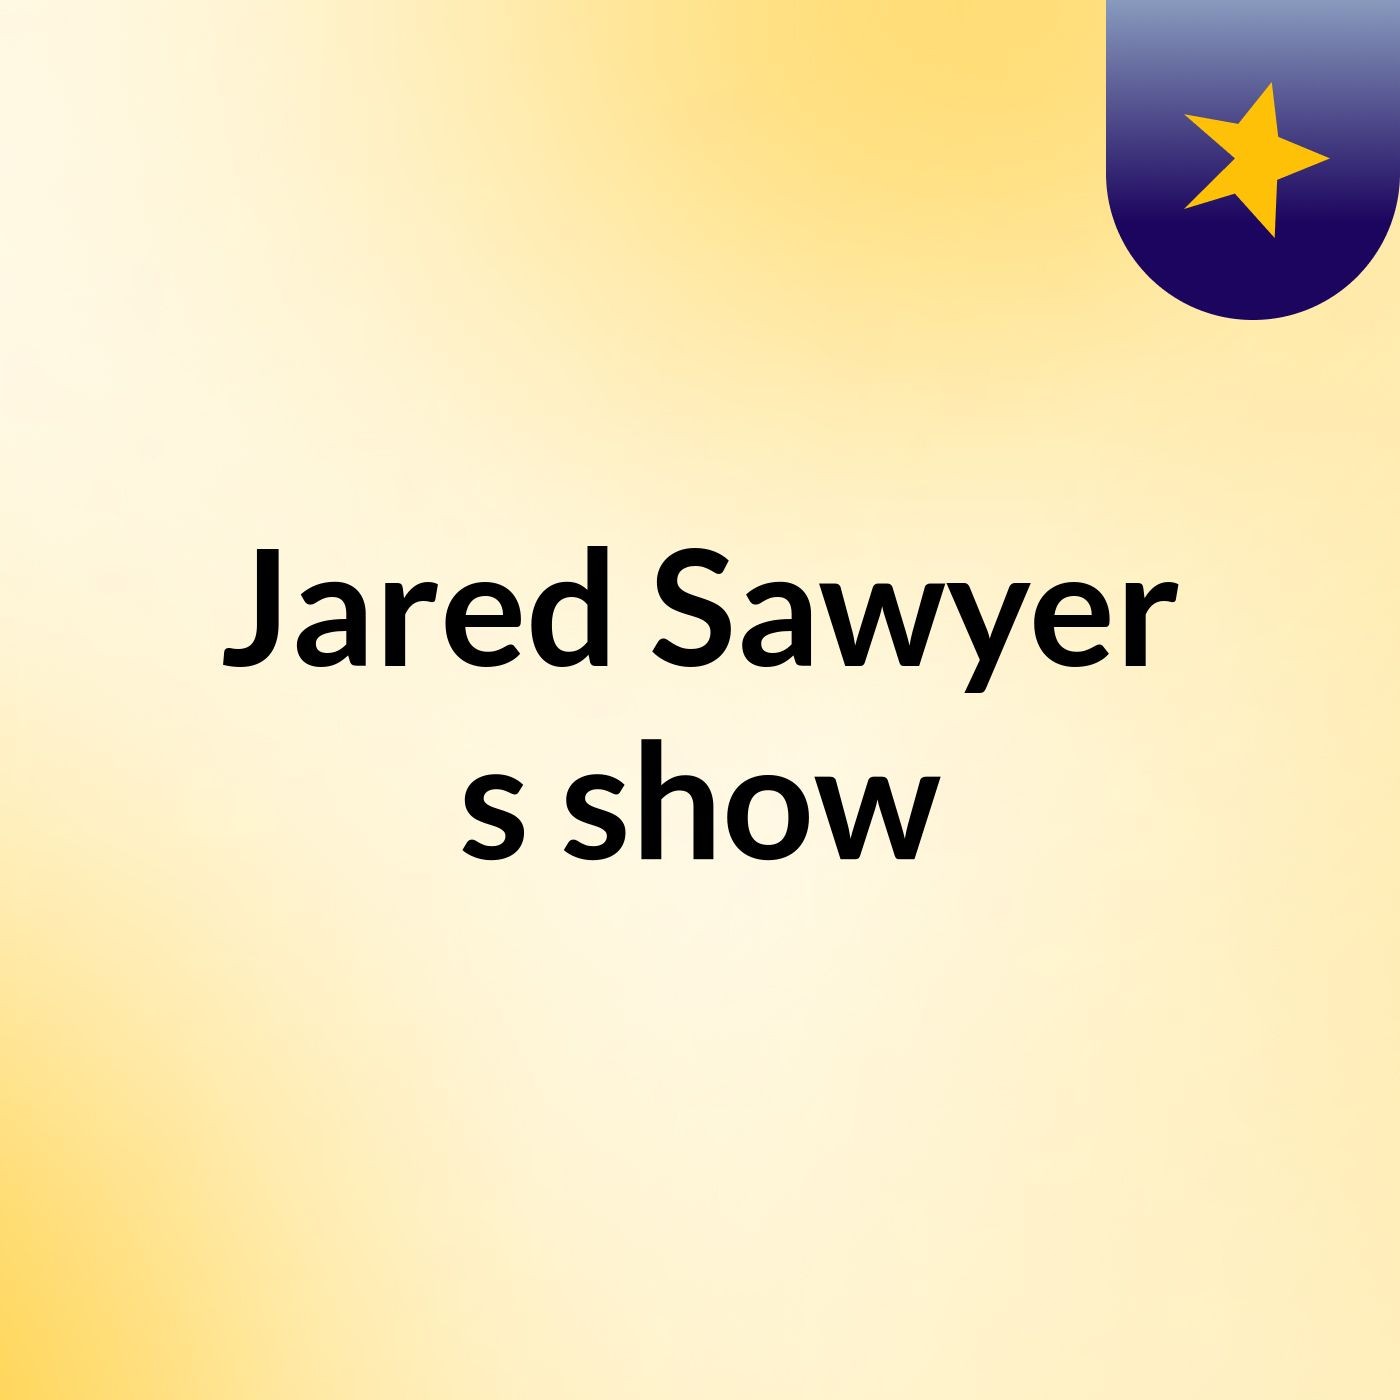 Jared Sawyer's show